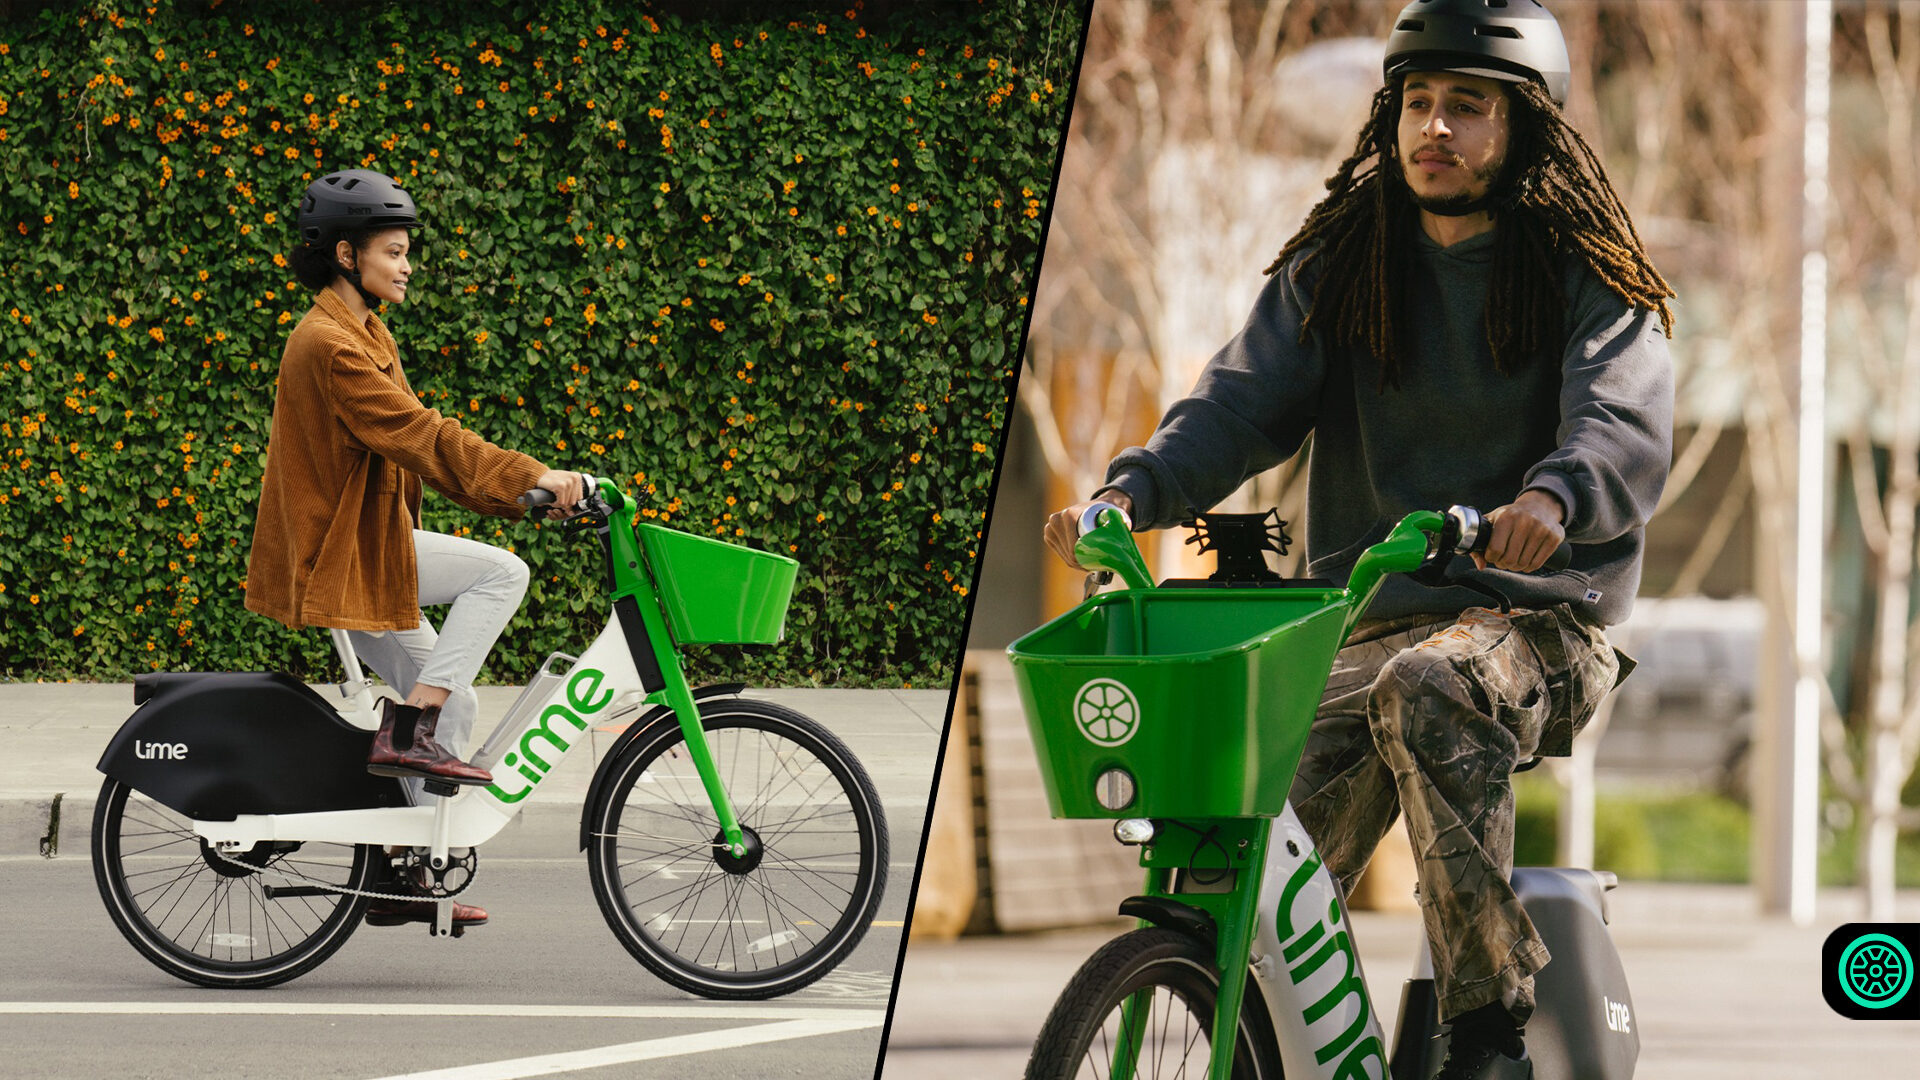 Lime yeni otomatik şanzımana sahip elektrikli bisikleti tanıttı 3